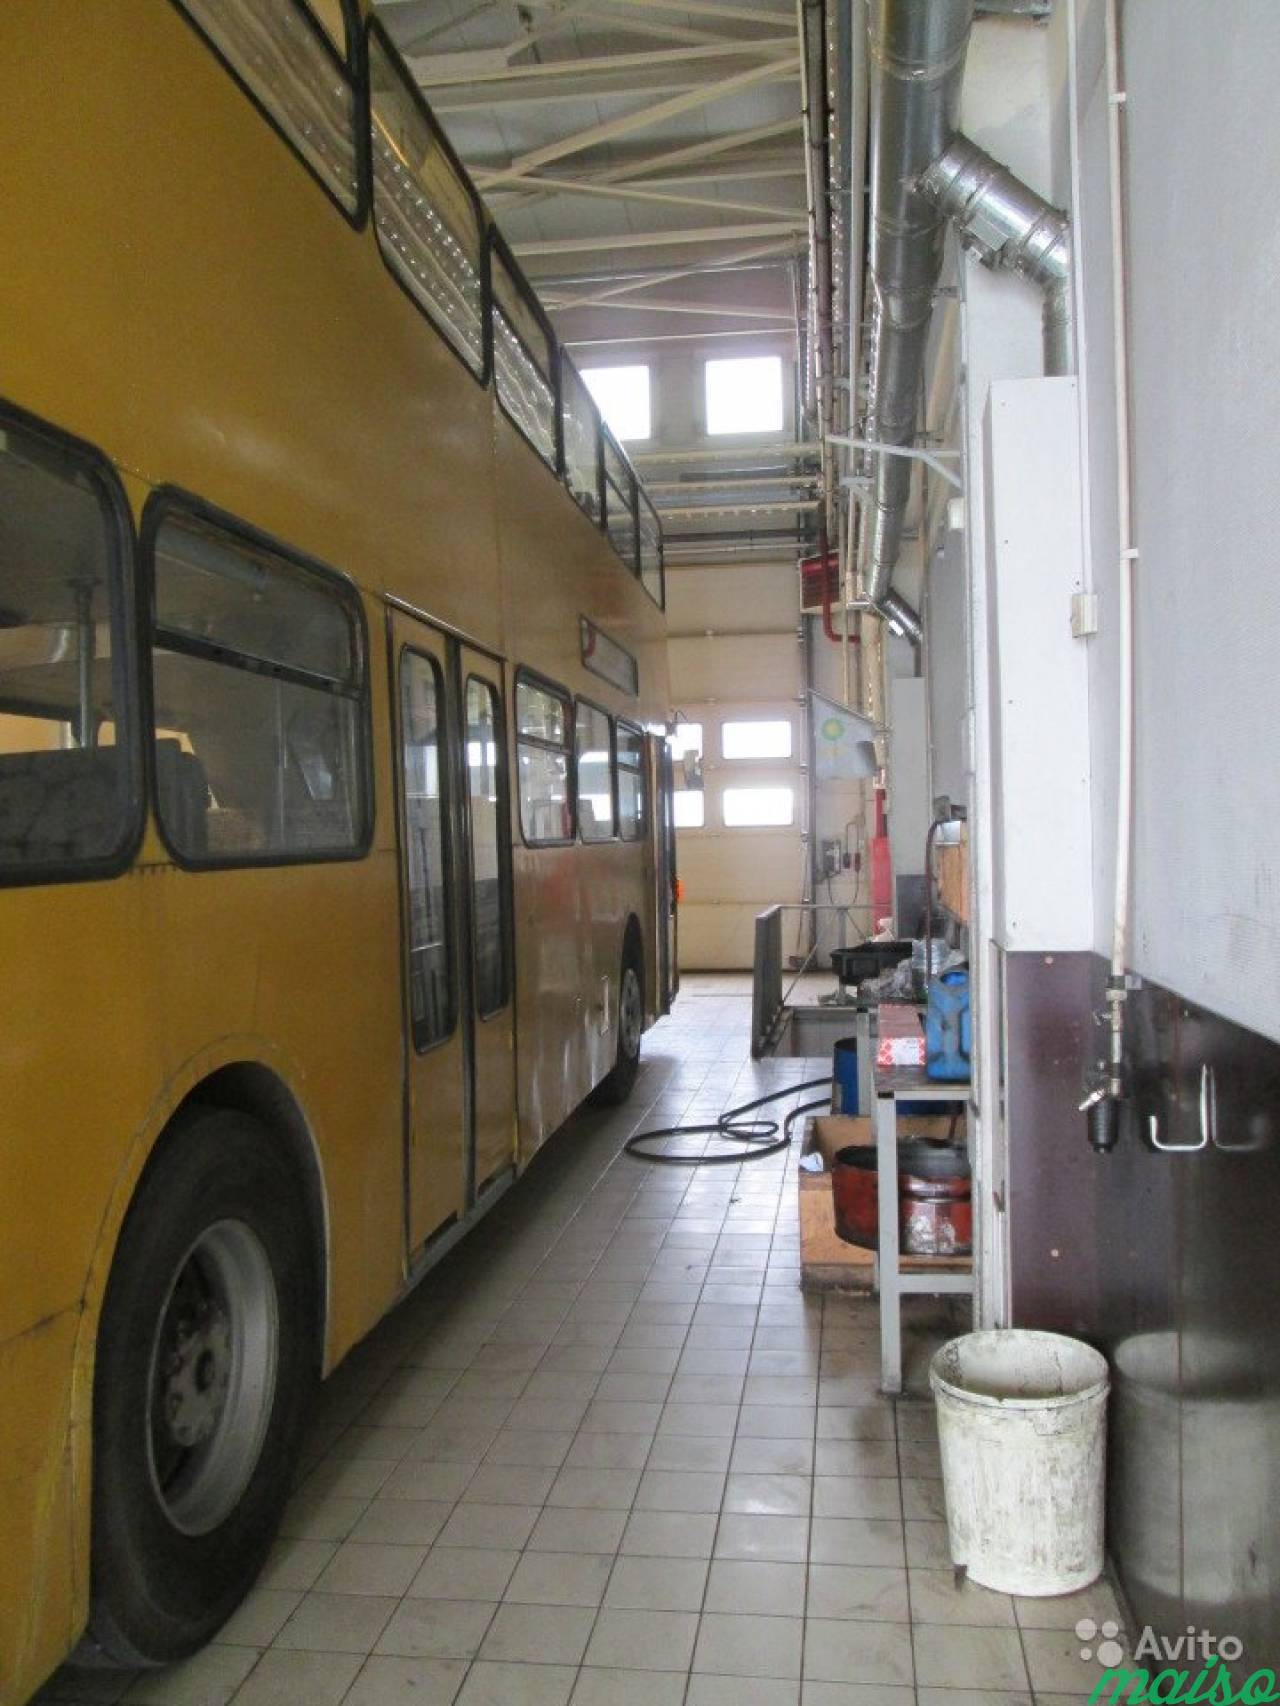 Двухэтажный автобус, экскурсии, фудтрак, патибас в Санкт-Петербурге. Фото 19